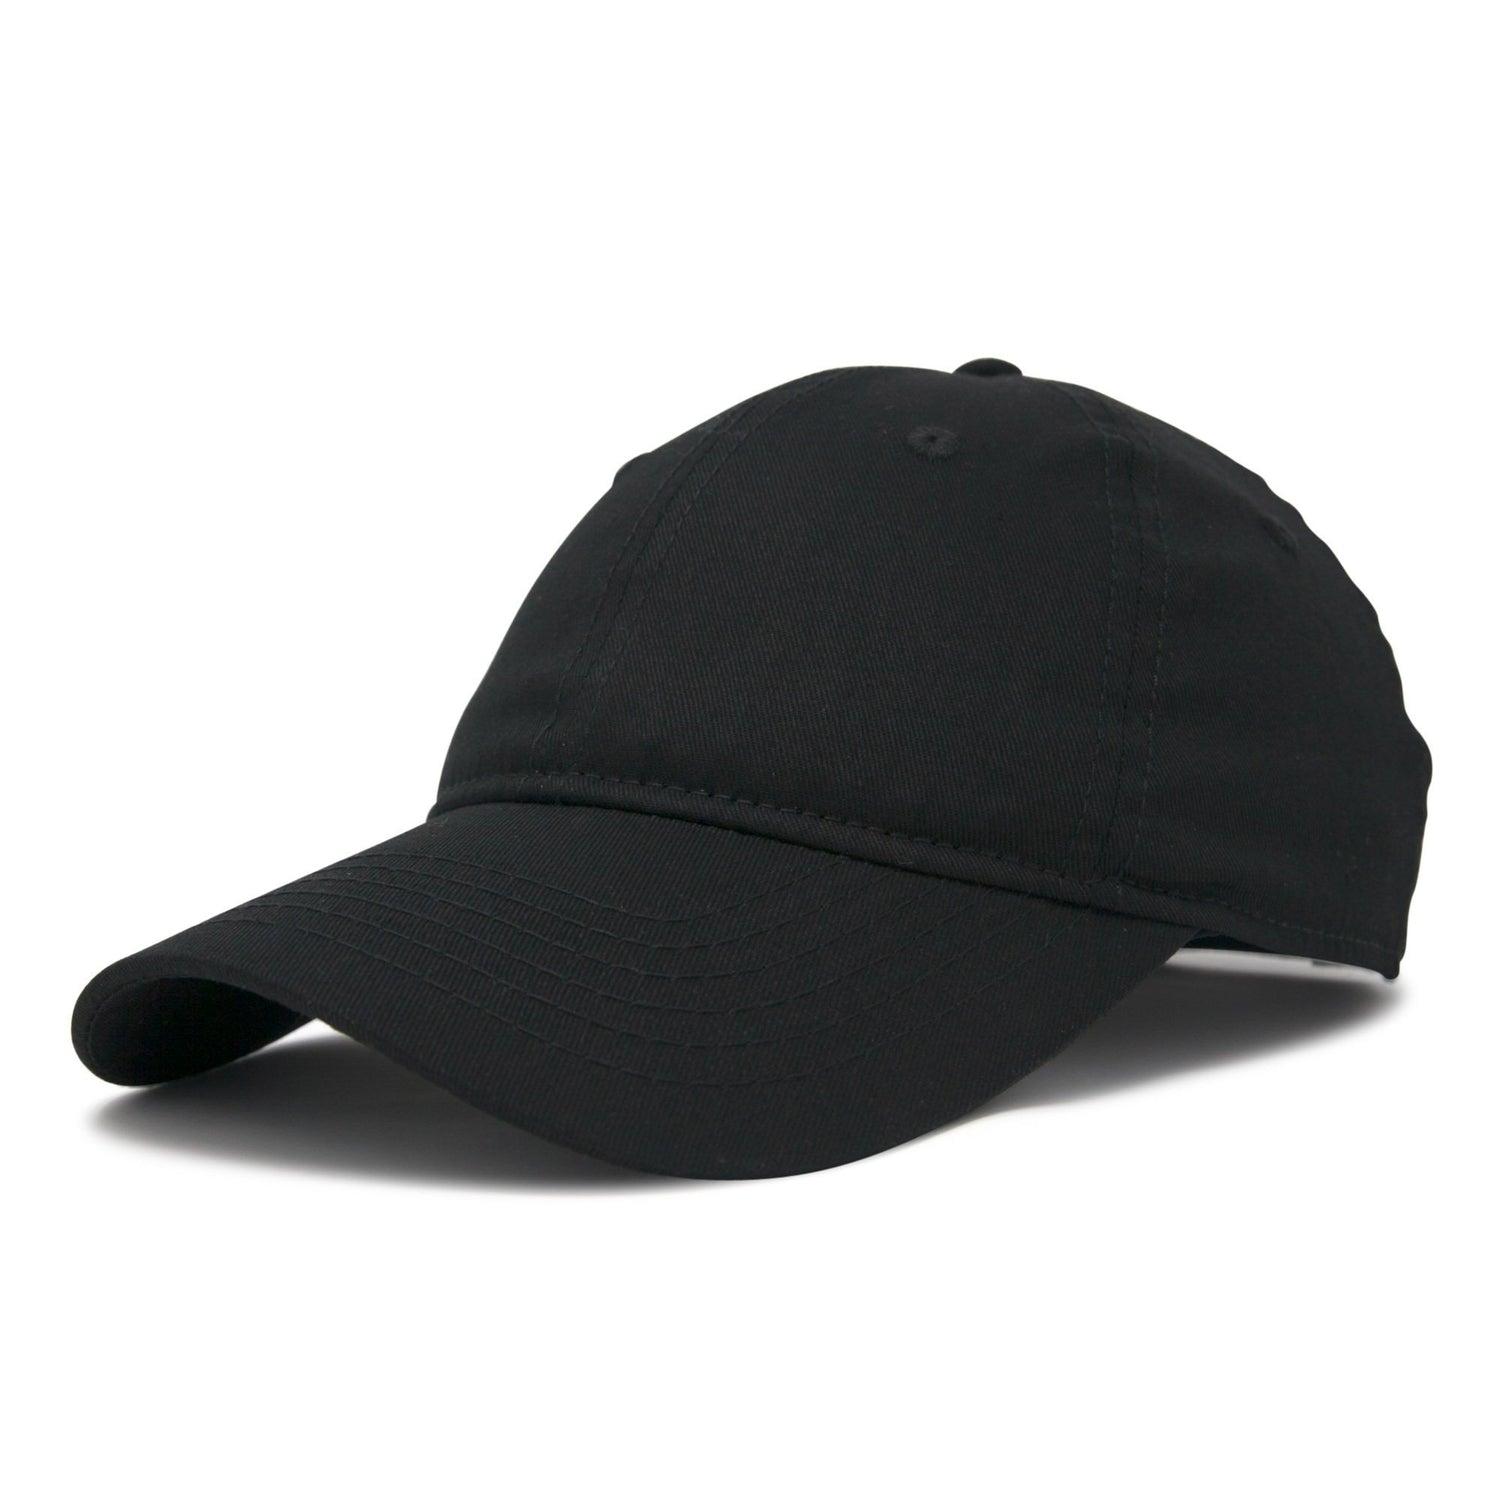 Unisex Caps & Hats